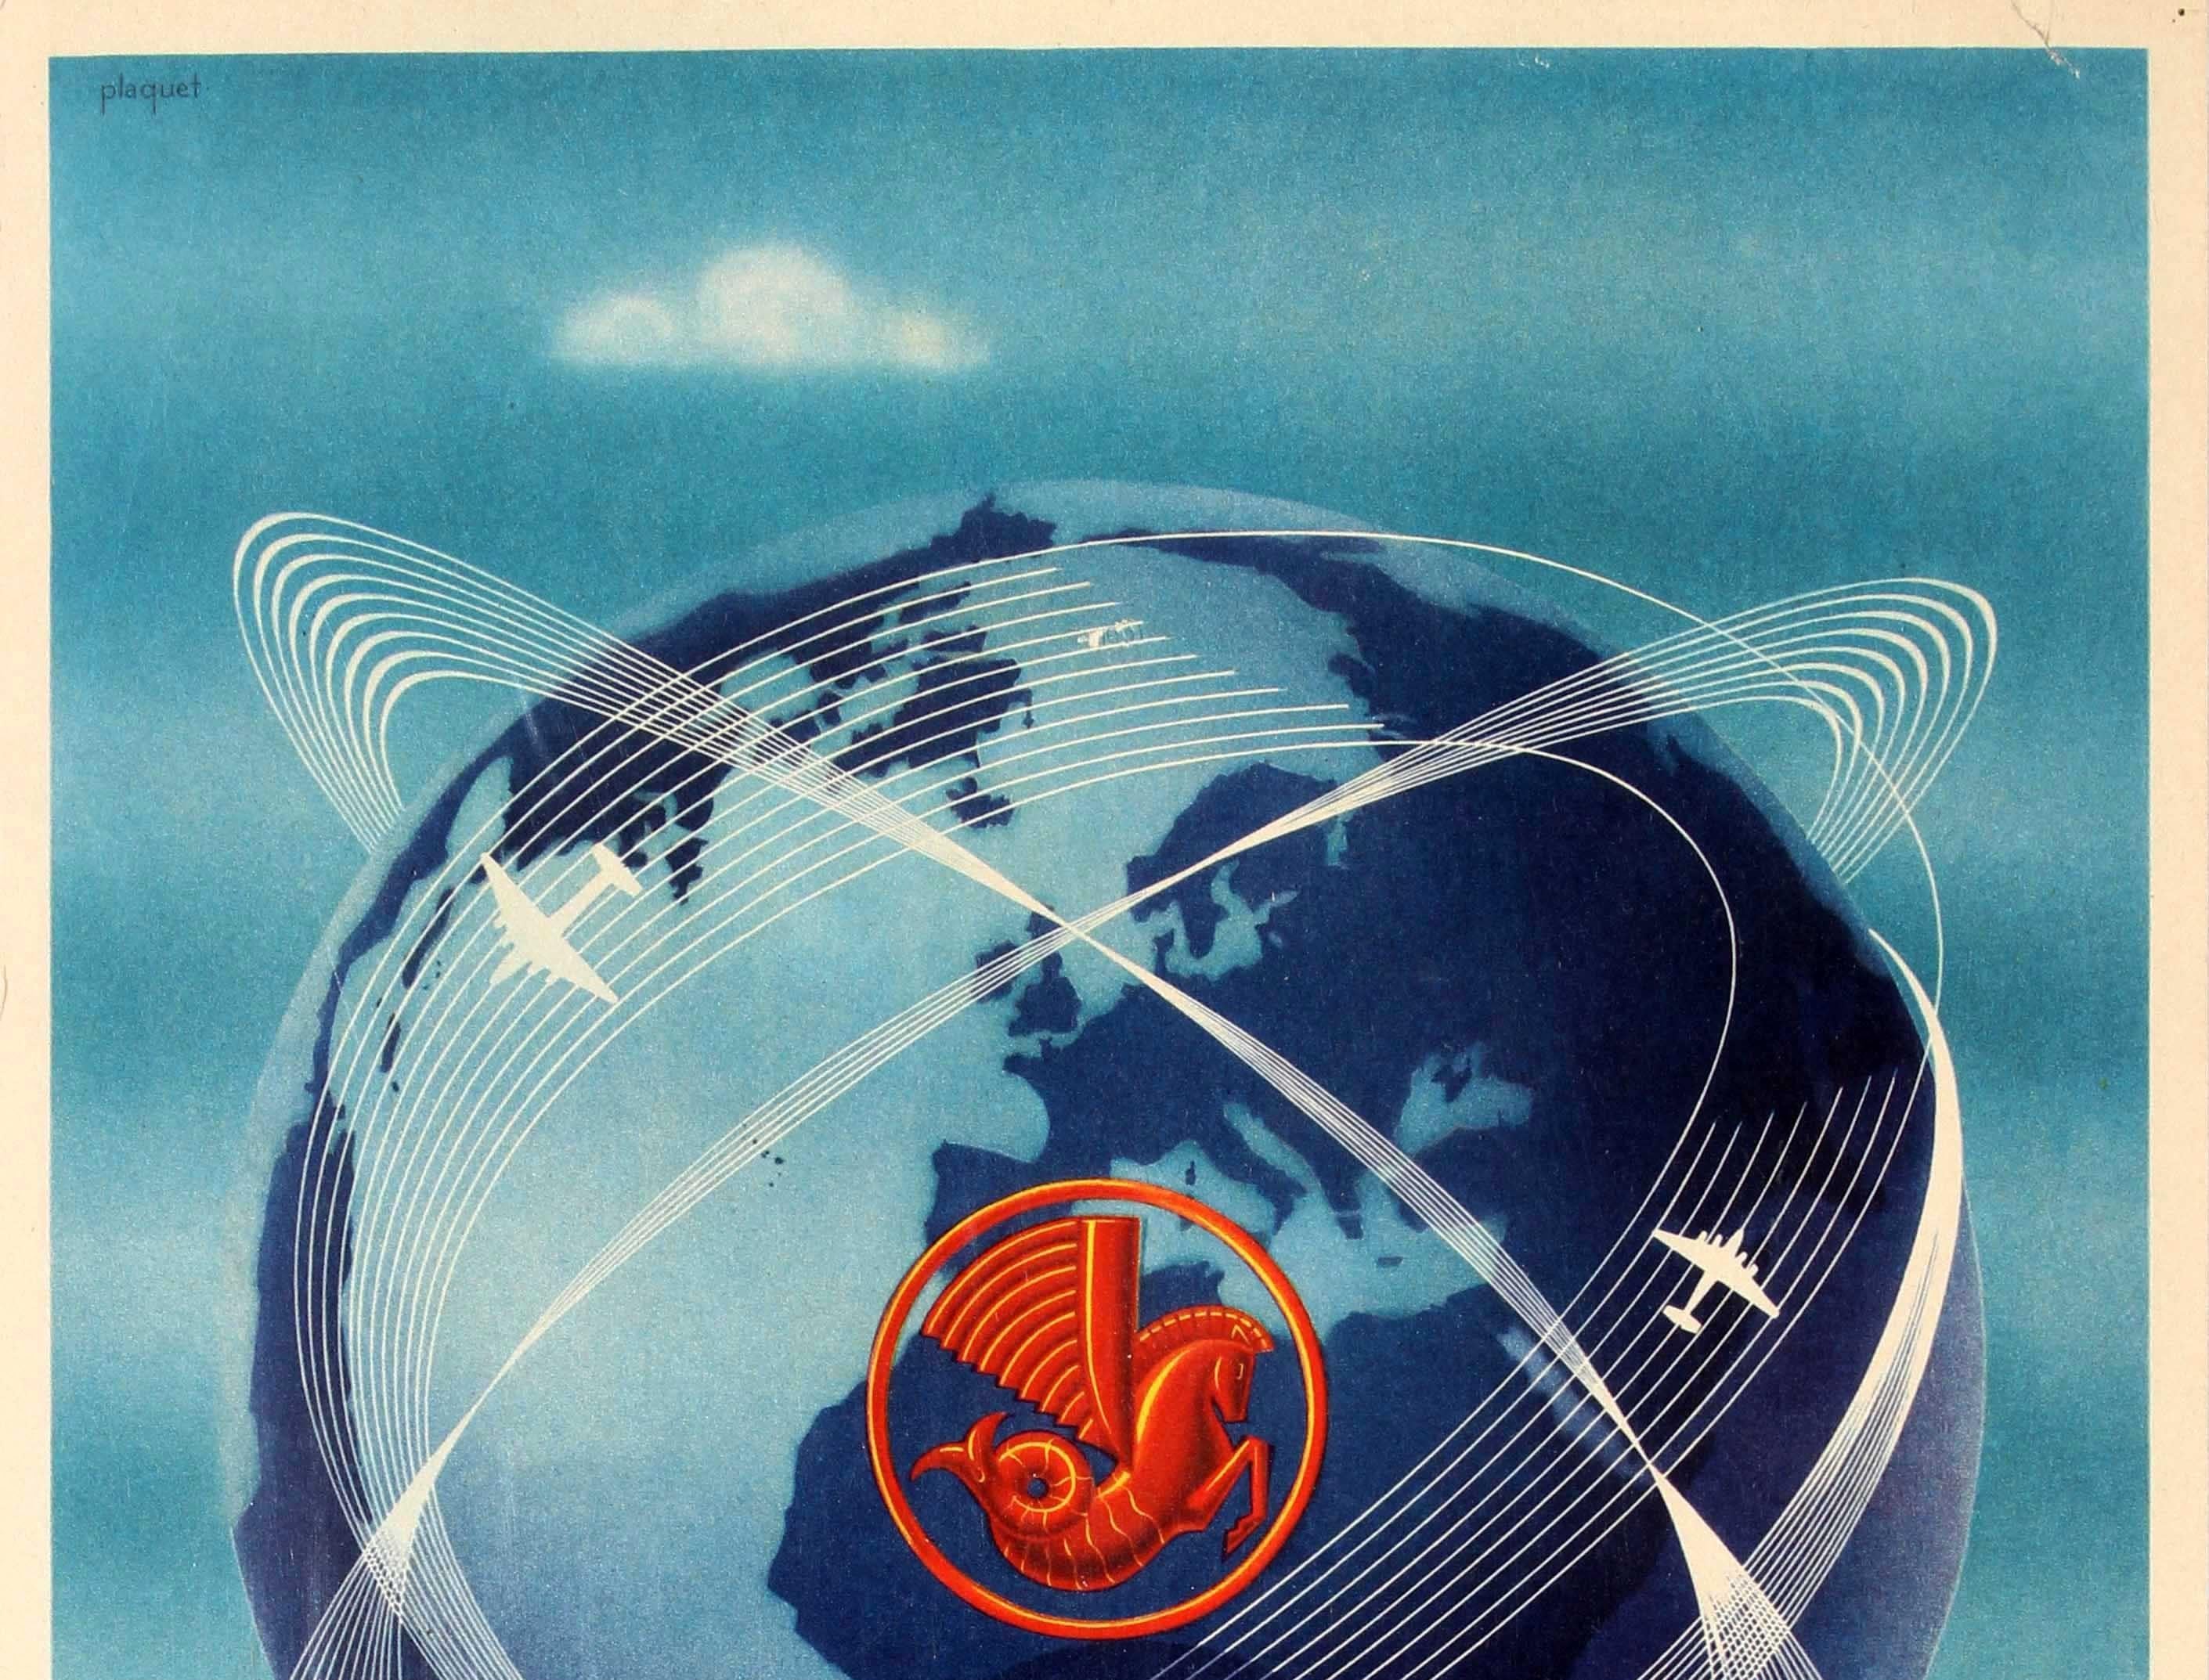 Affiche de voyage vintage originale d'Air France faisant la publicité de son réseau aérien mondial / Air France Reseau Aerien Mondial. Superbe œuvre d'art représentant deux avions blancs volant le long de plusieurs lignes blanches autour d'un globe